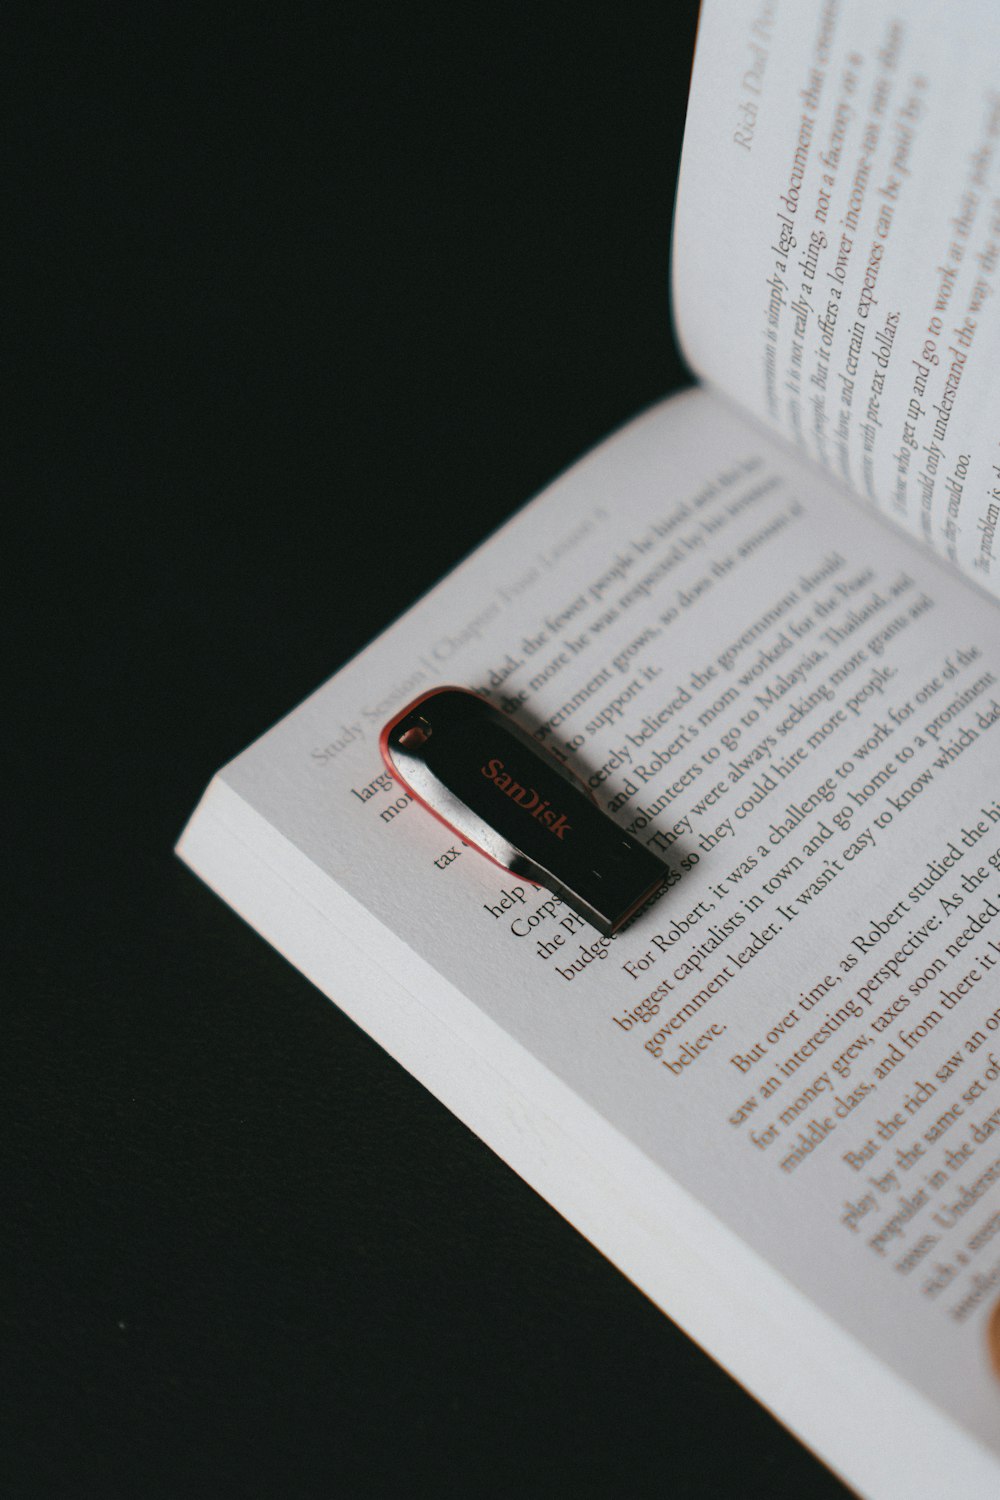 흰색 프린터 용지에 검은 색과 빨간색 USB 플래시 드라이브